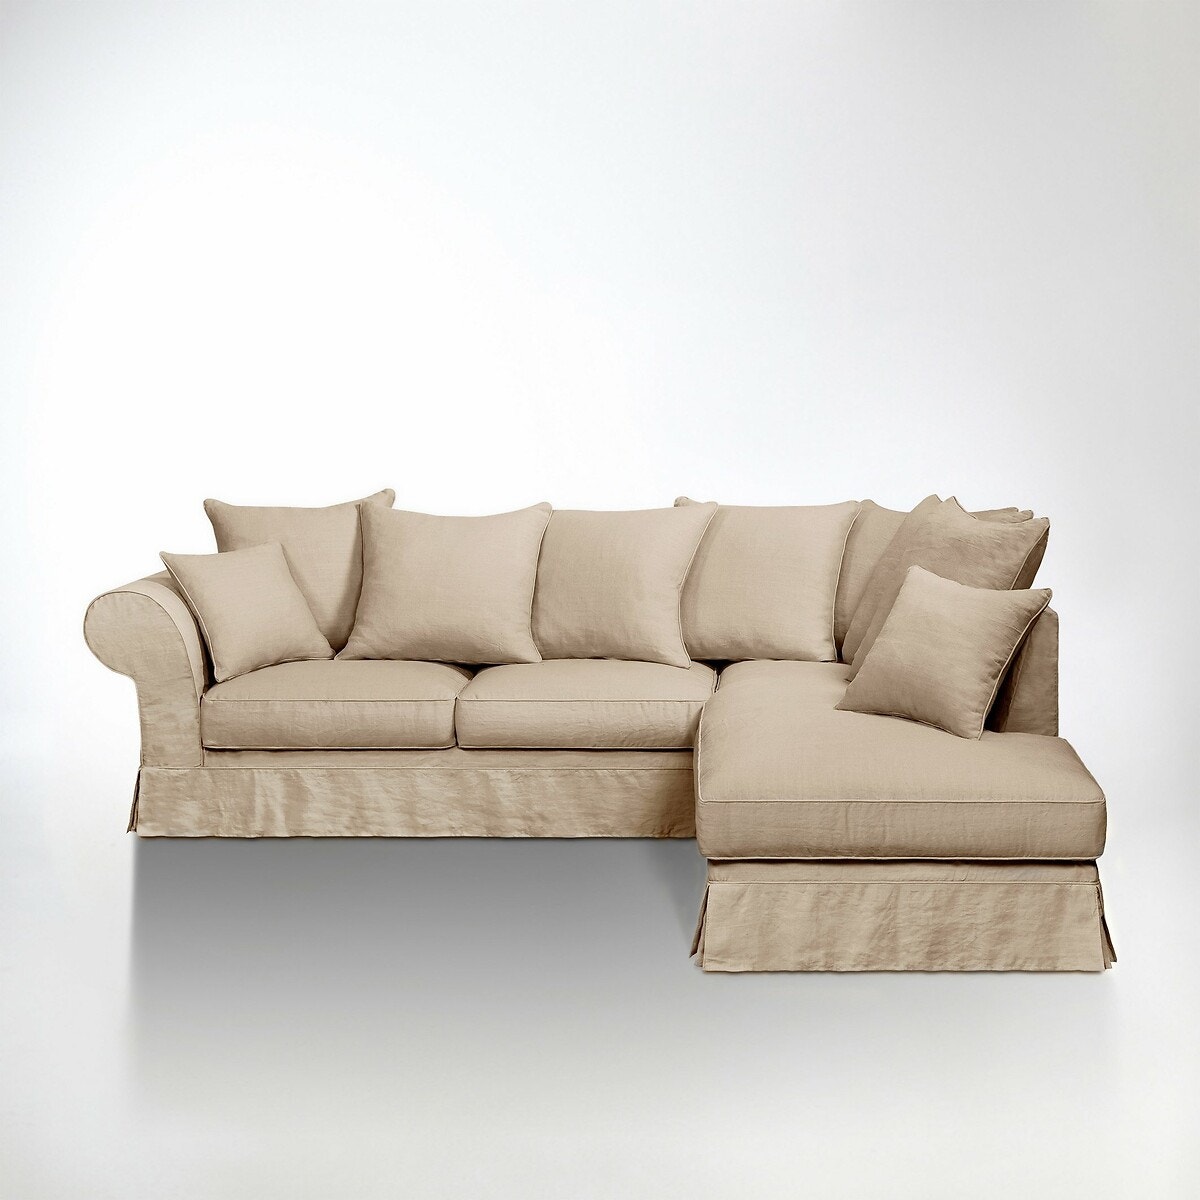 Σπίτι > Έπιπλα > Καθιστικό > Καναπέδες > Γωνιακοί καναπέδες Γωνιακός πτυσσόμενος καναπές από χοντρό λινό ύφασμα